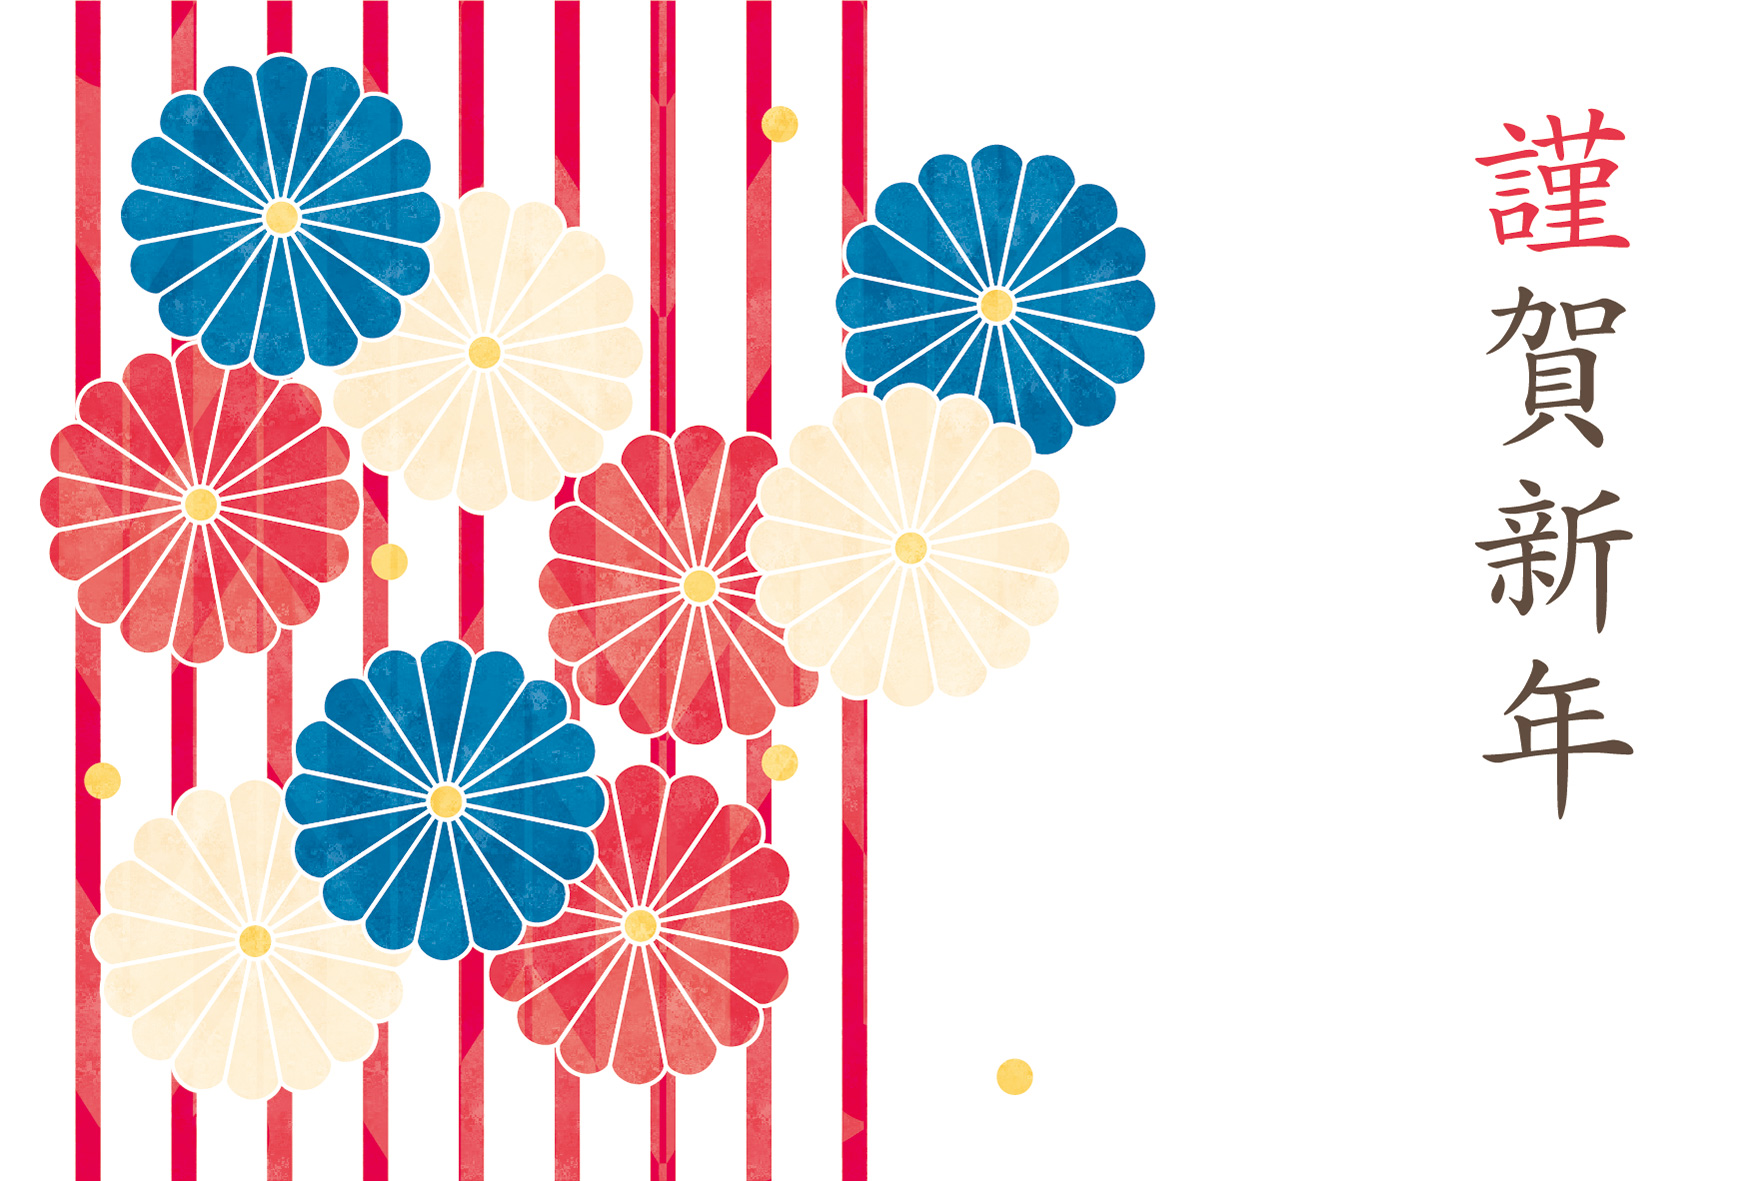 年賀状 丑年 三色の菊の花とストライプ柄のデザイン 年賀状21無料イラスト素材集